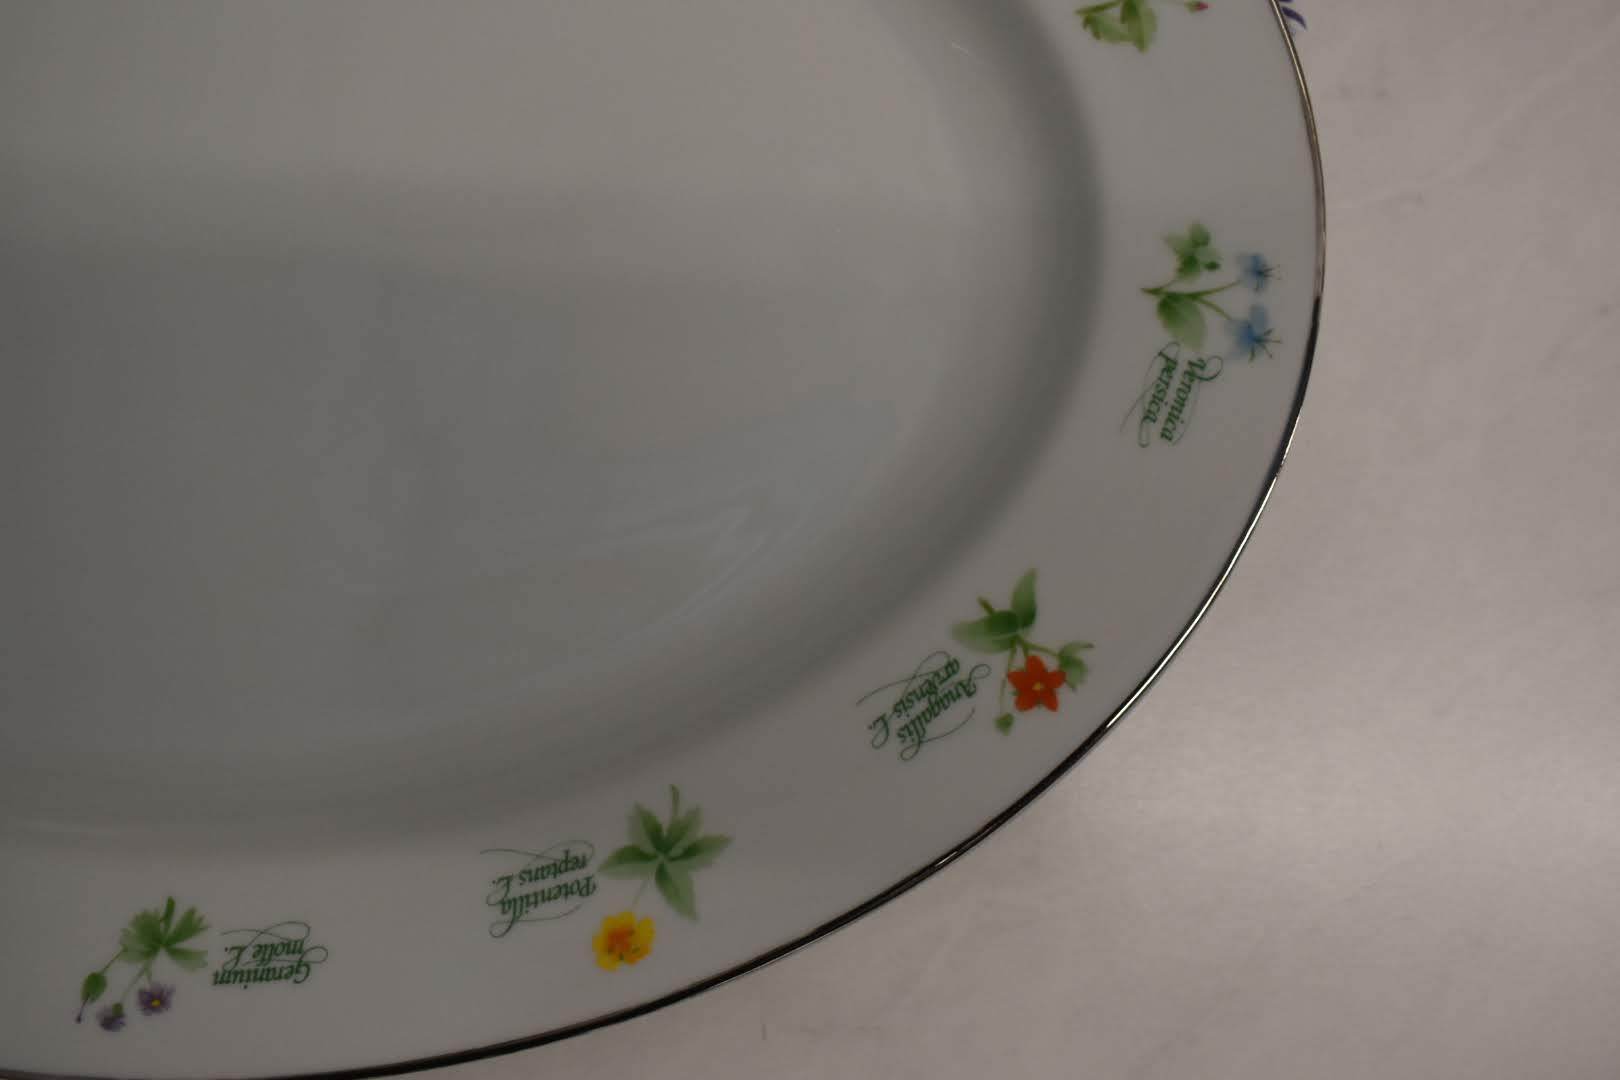 Anchor Hocking Fine Porcelain China - Botanical Floral Pattern - Large Platter